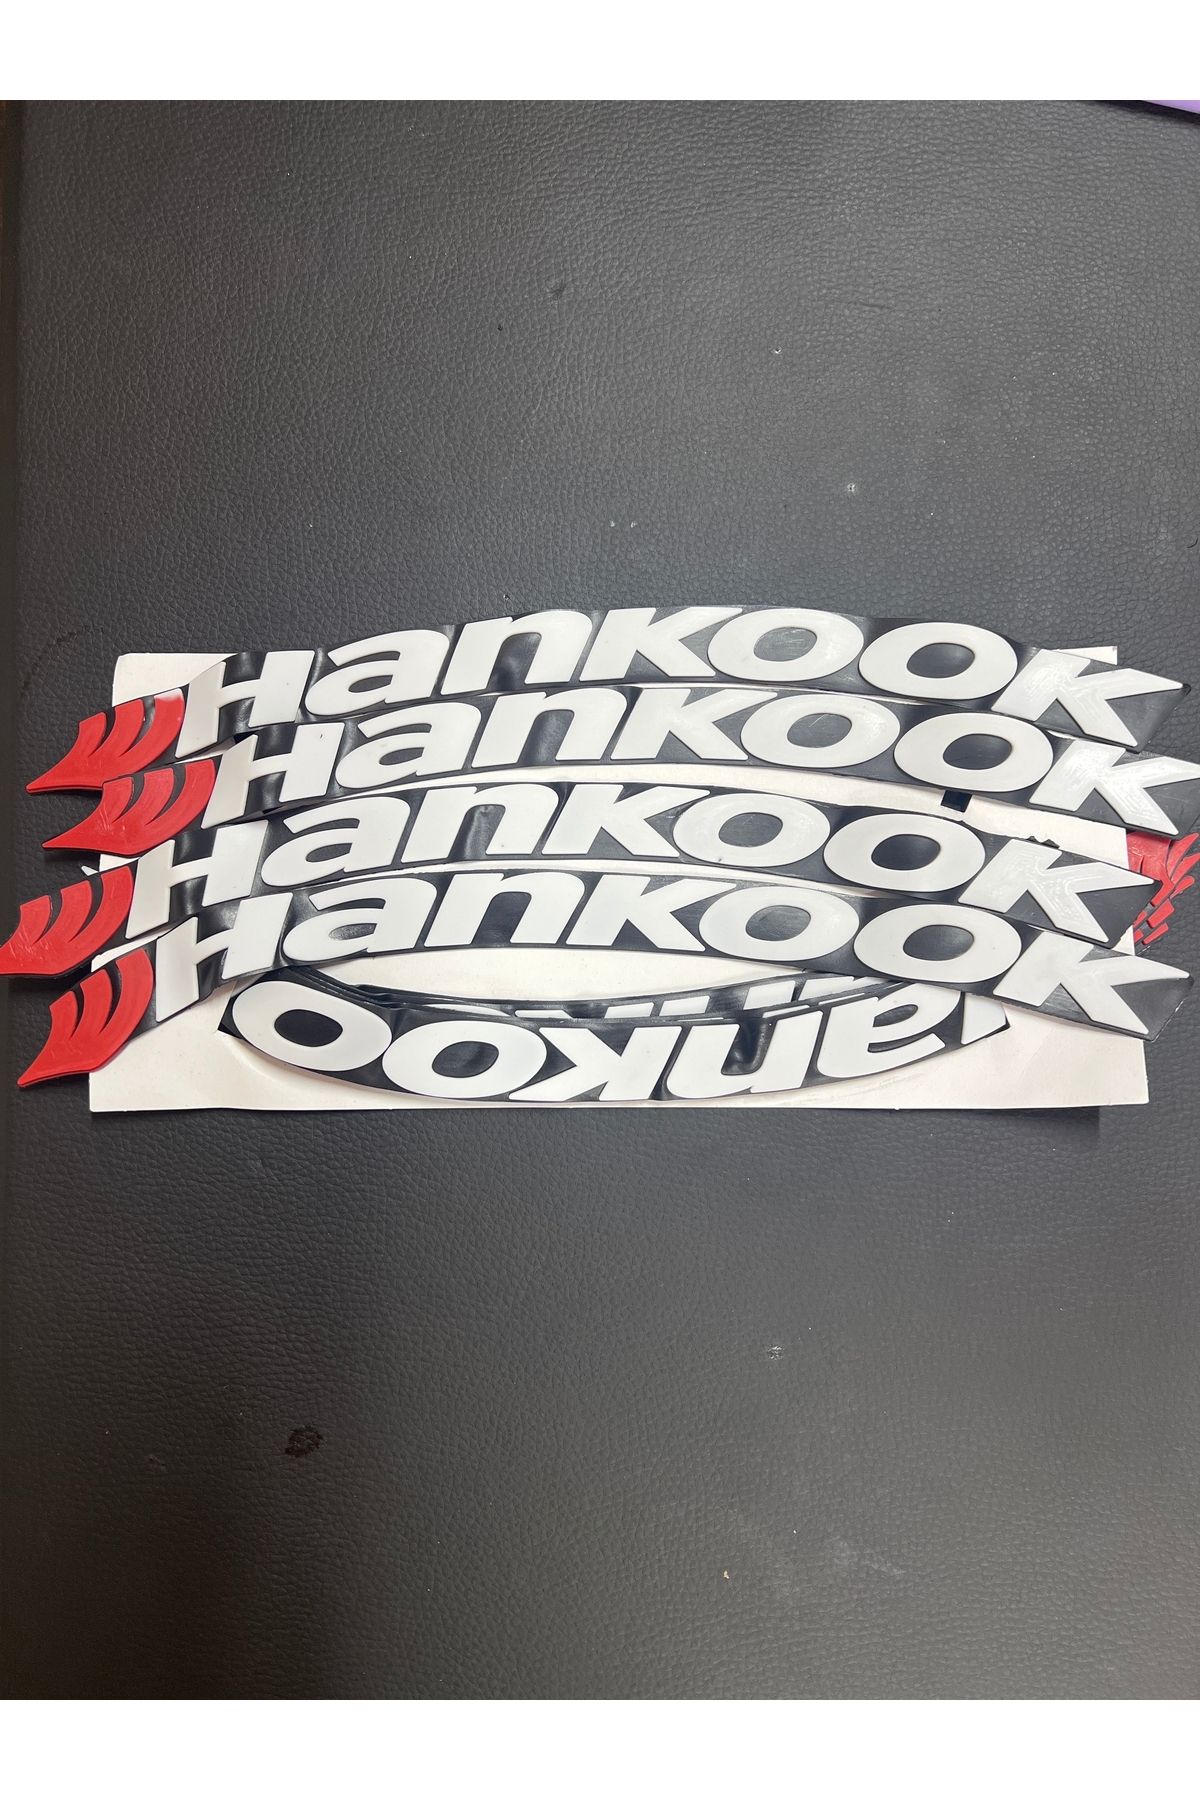 Hankook Lastik Yazısı 8li Yapıştırıcılı